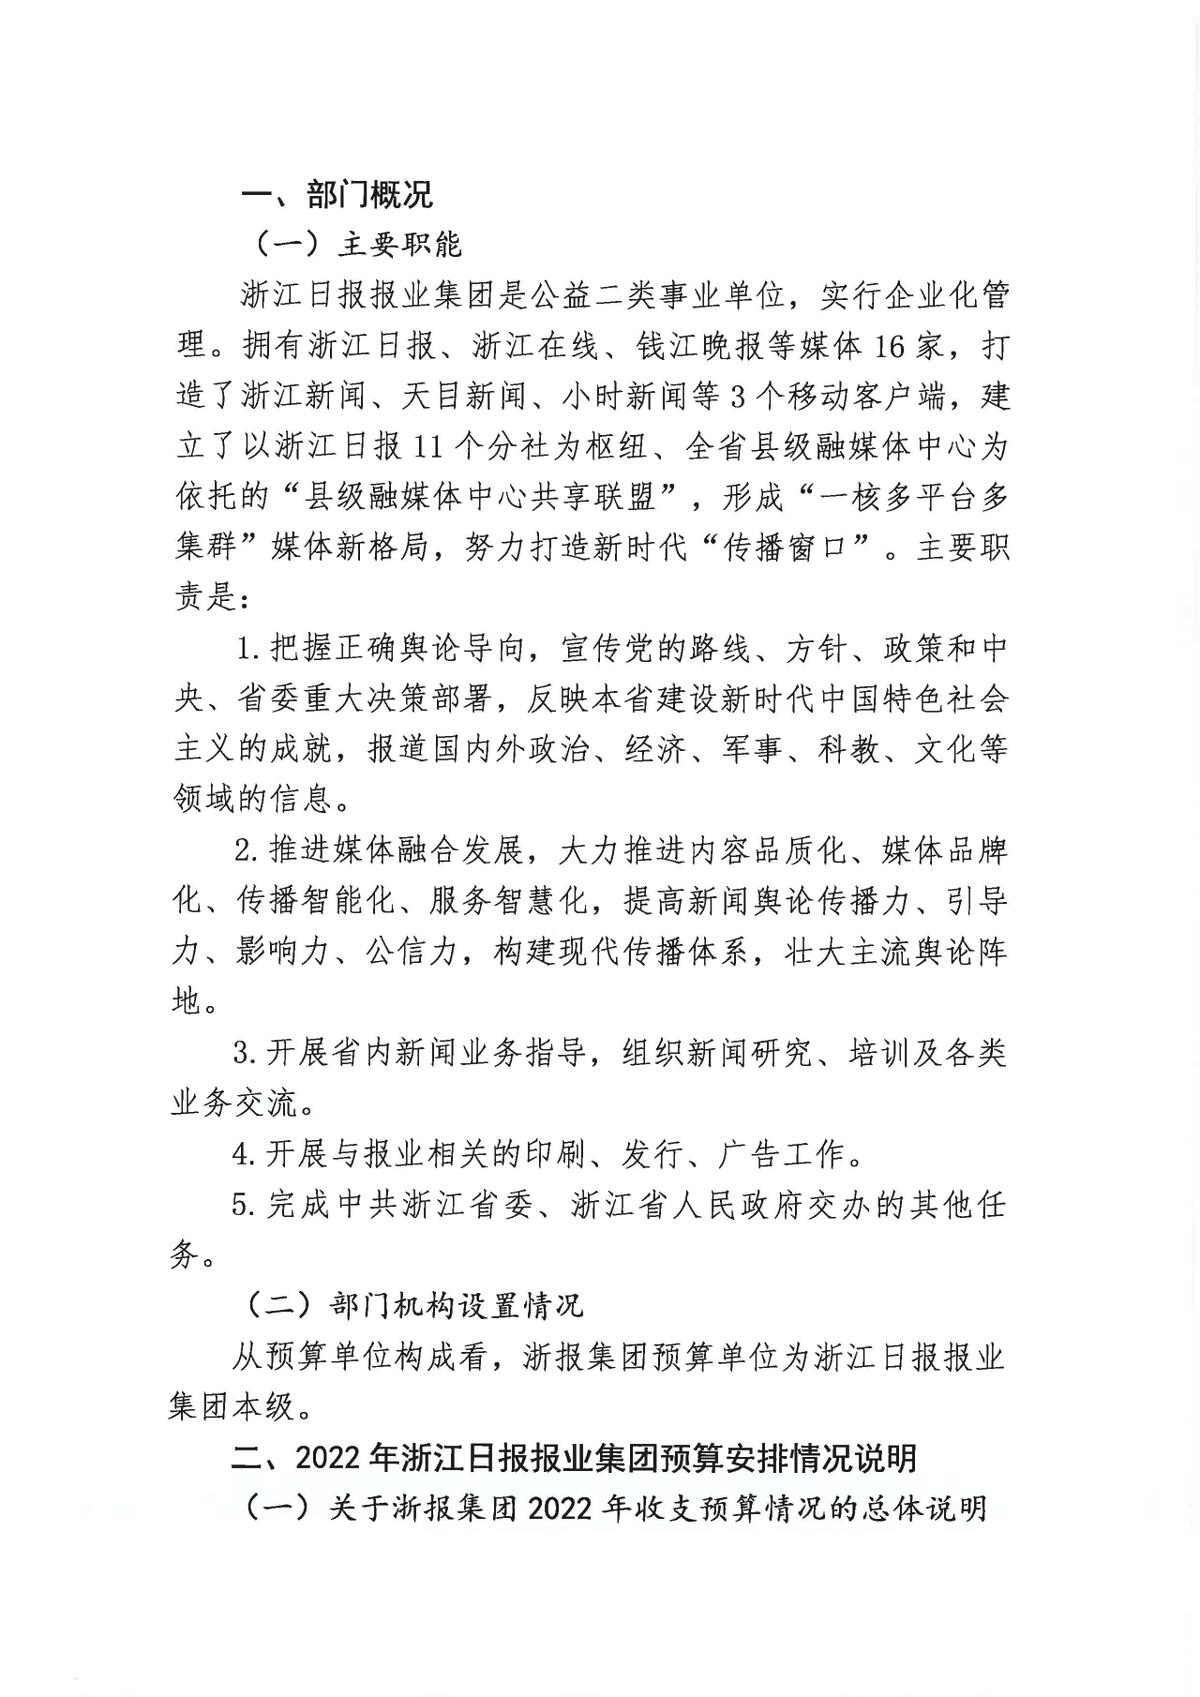 浙江日报报业集团2022年部门预算公开_页面_04.jpg